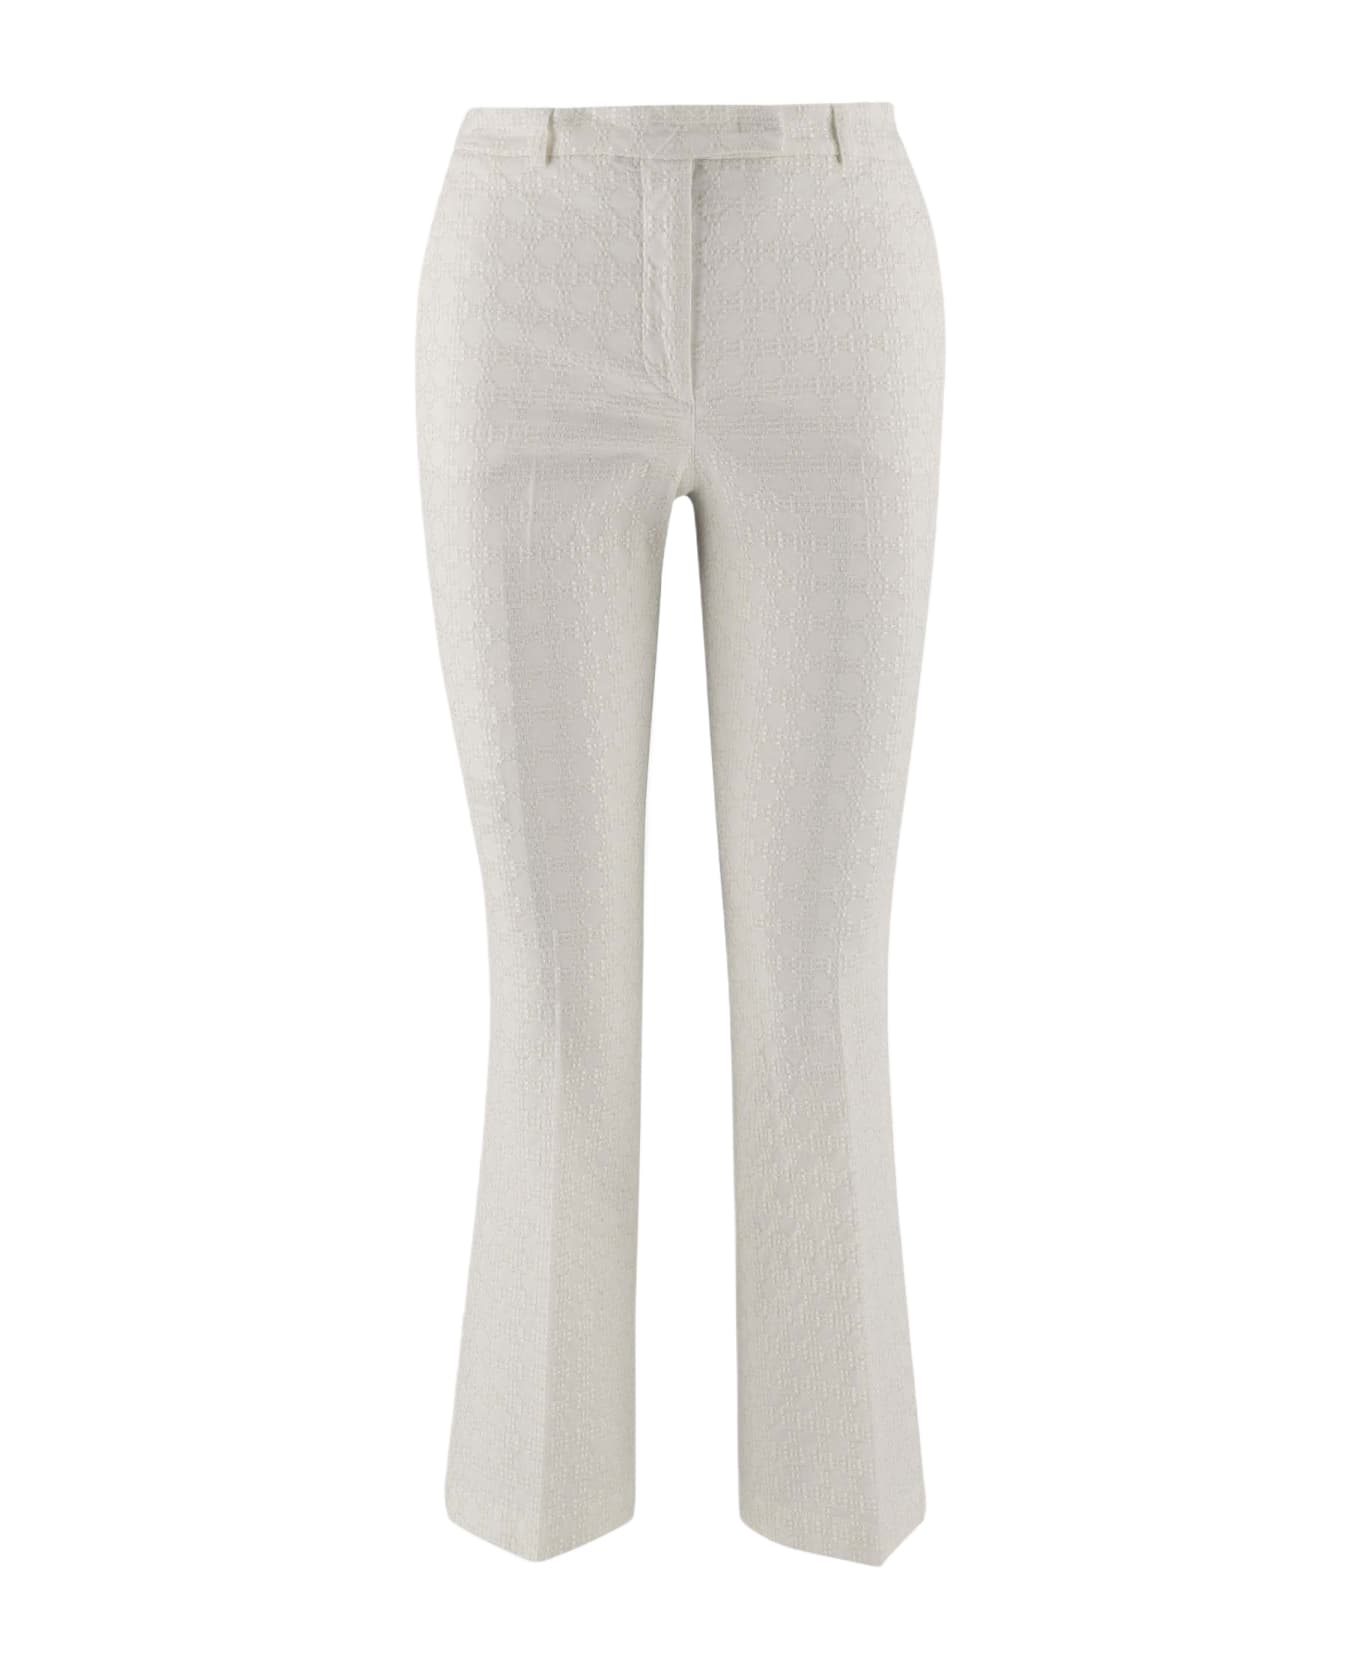 QL2 Stretch Cotton Pants - White